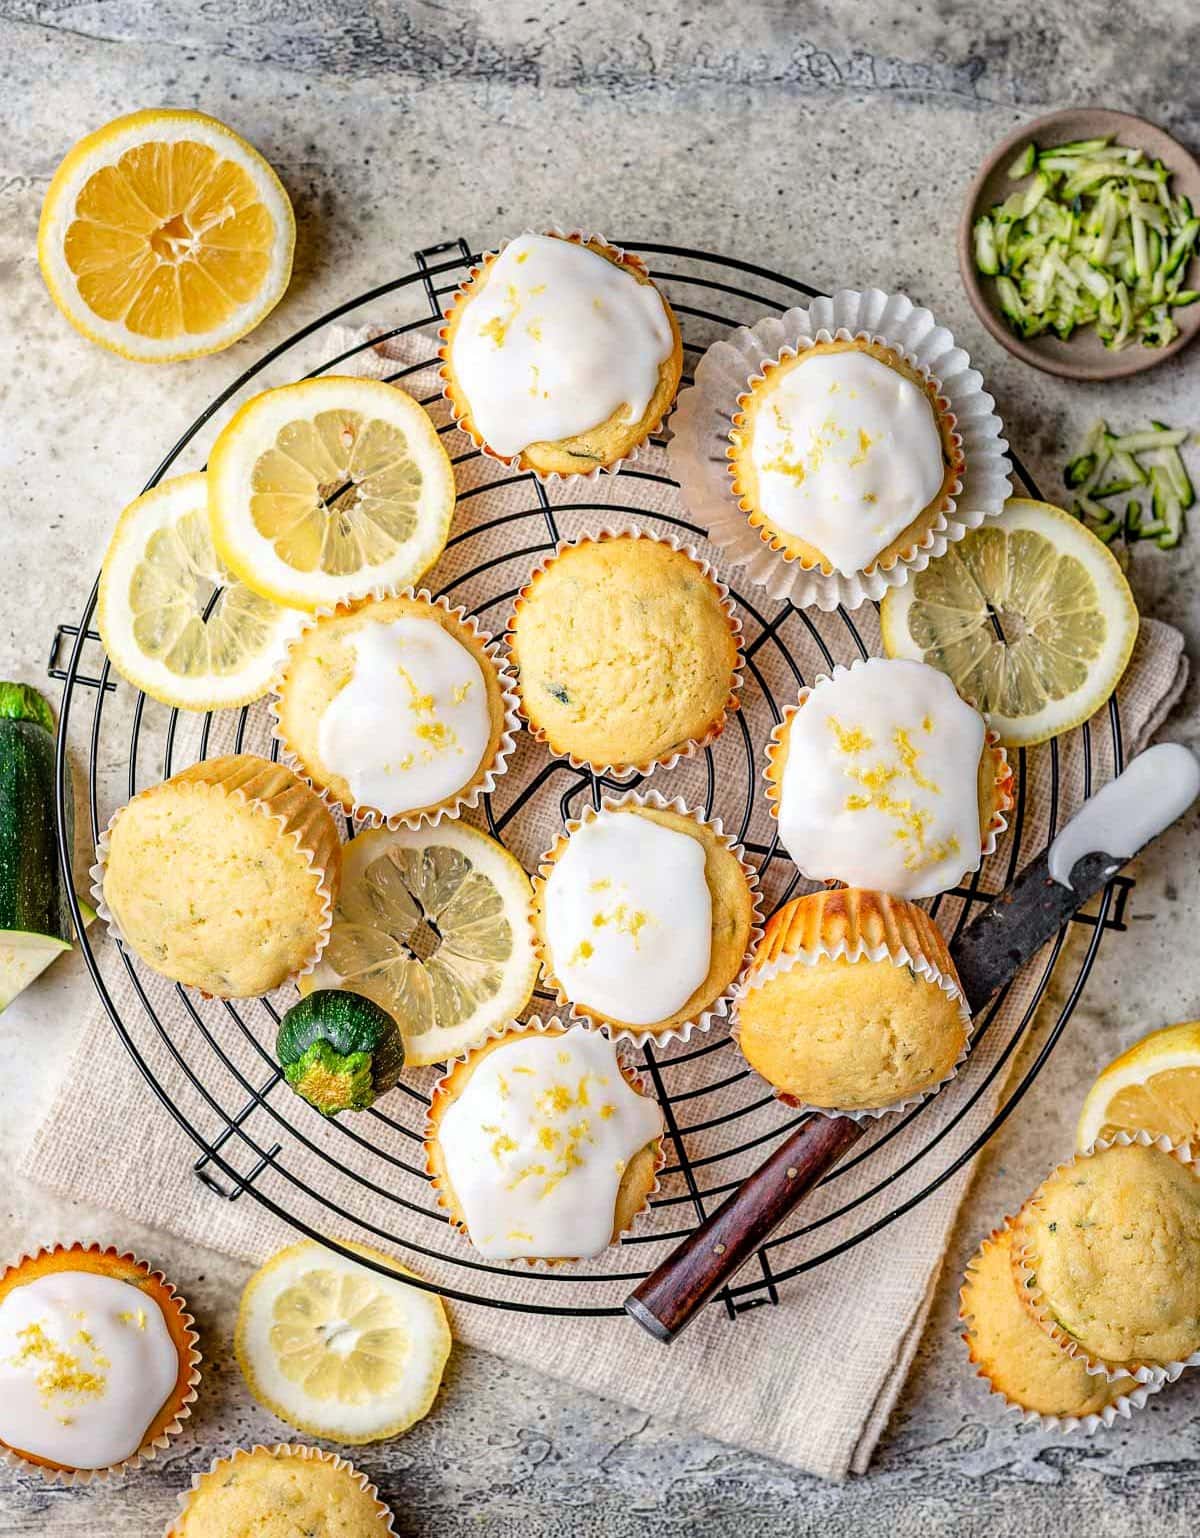 dall'alto in basso guarda i muffin di zucchine glassati fatti con il limone su una griglia di raffreddamento di filo nero con fette di limone sparse.